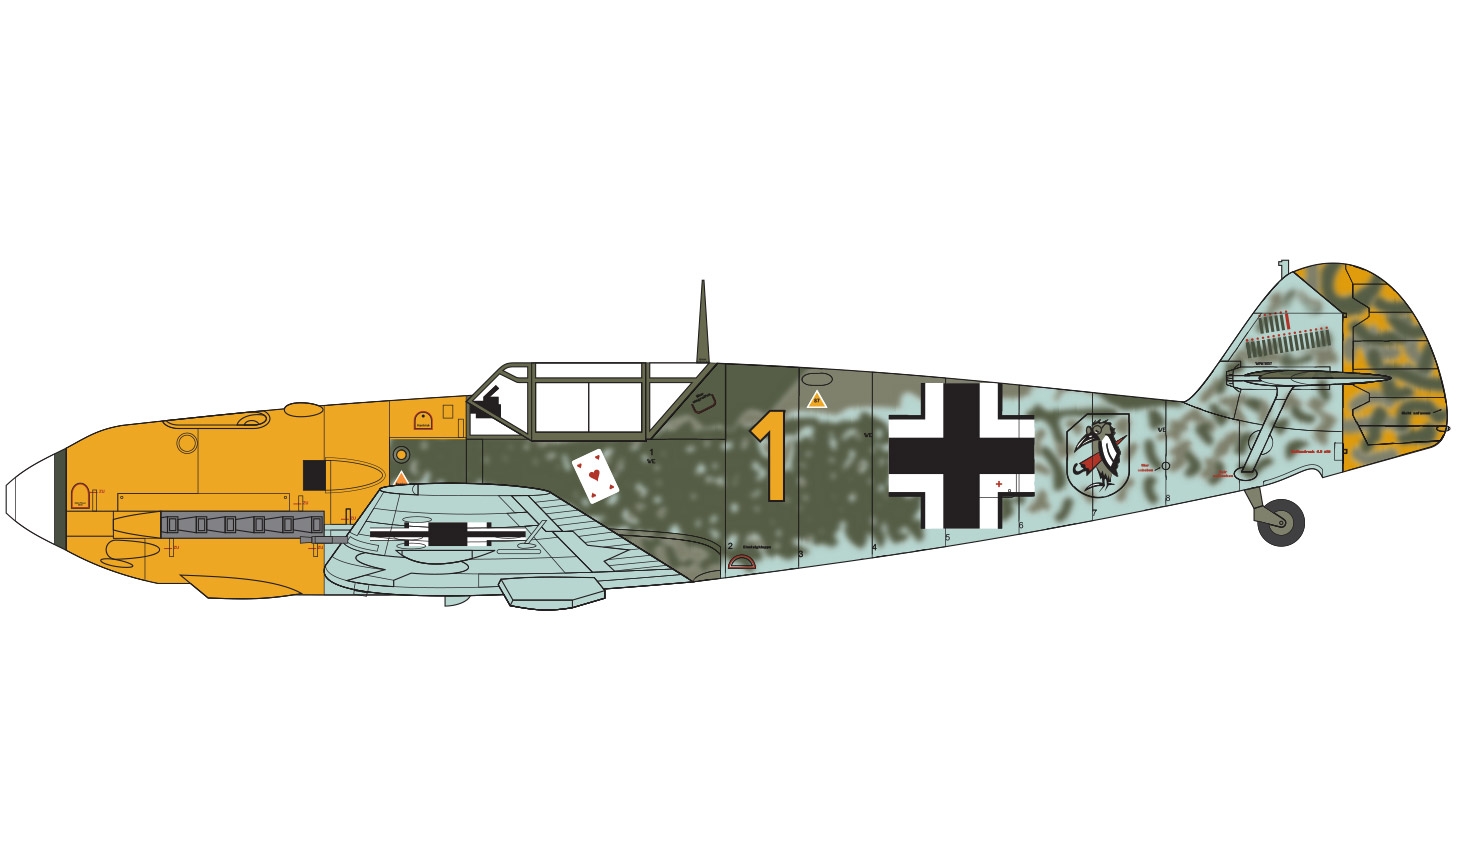 Airfix Messerschmitt Me 109E-4/E-01